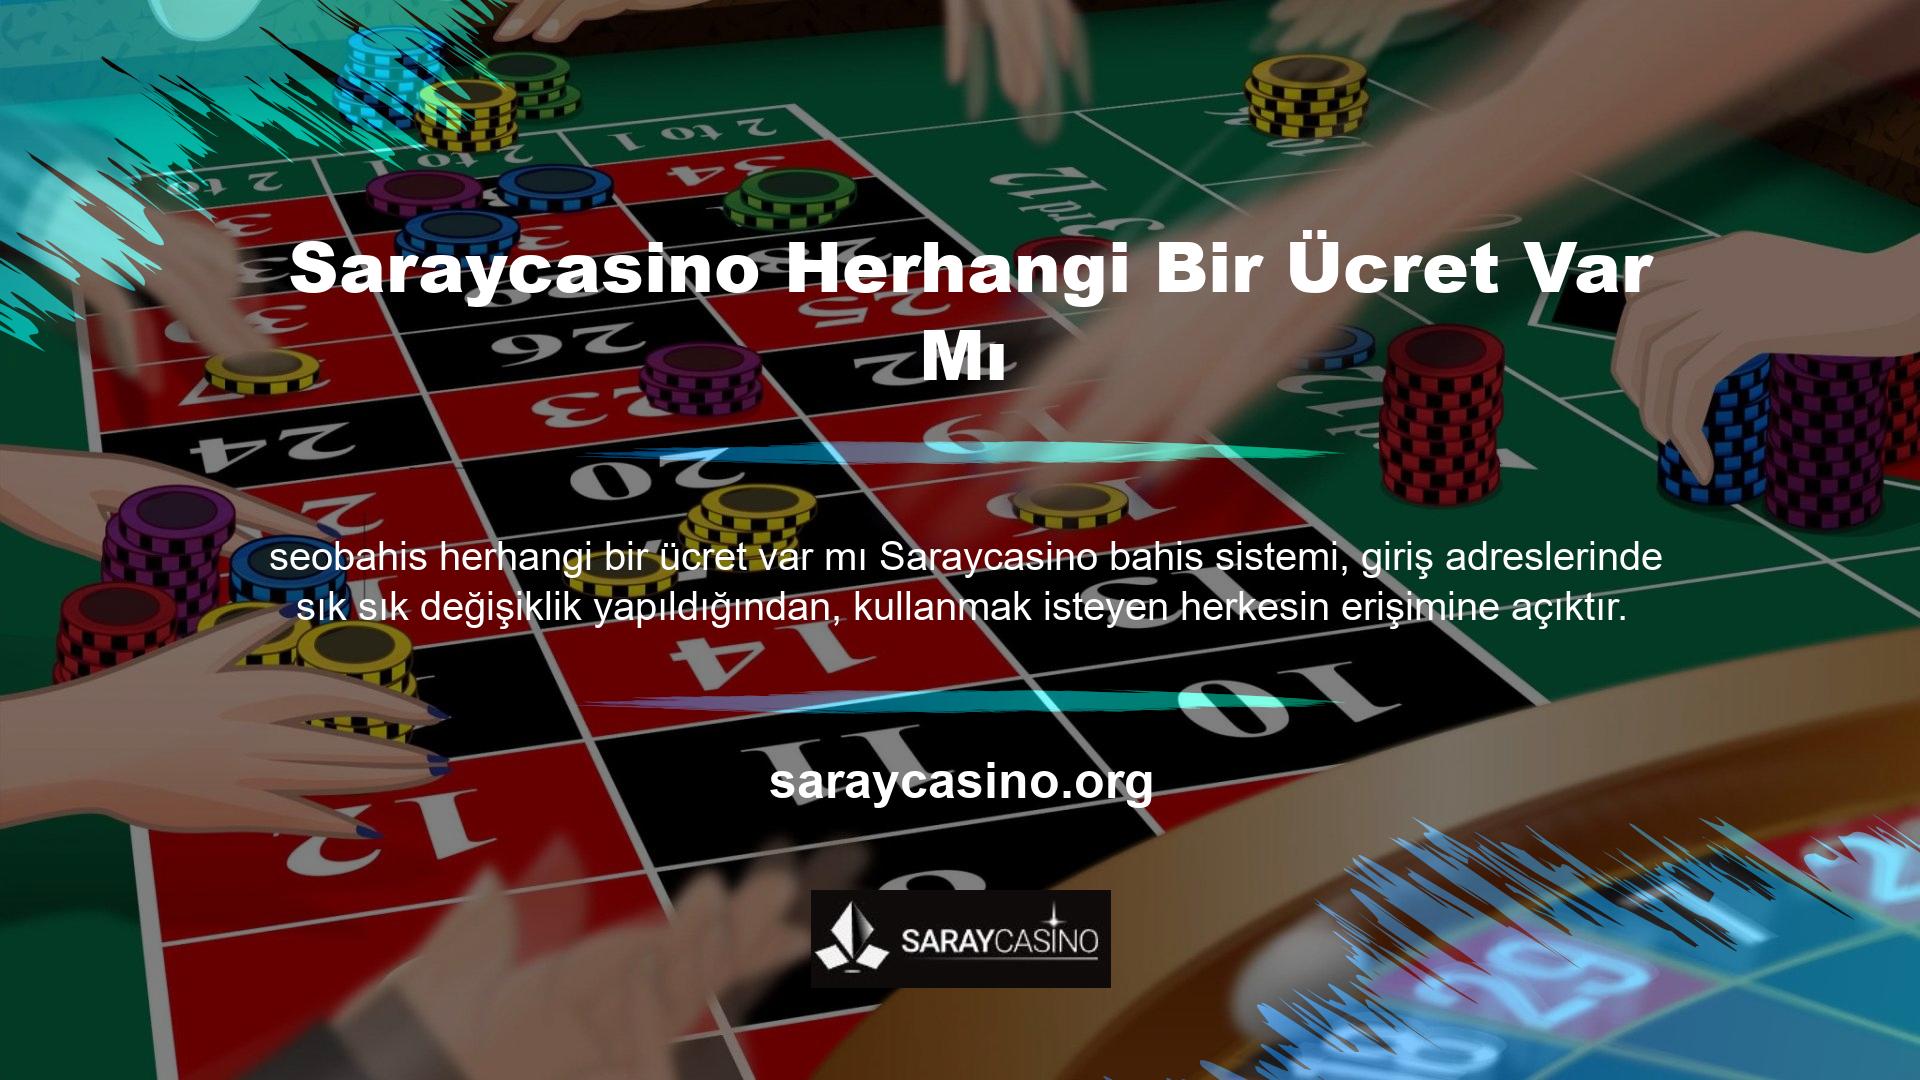 Oturum sırasında Saraycasino üyeleri, platforma erişmek ve sınırsız bir çevrimiçi casino deneyimi yaşamak için "Giriş" düğmesini kullanabilirler